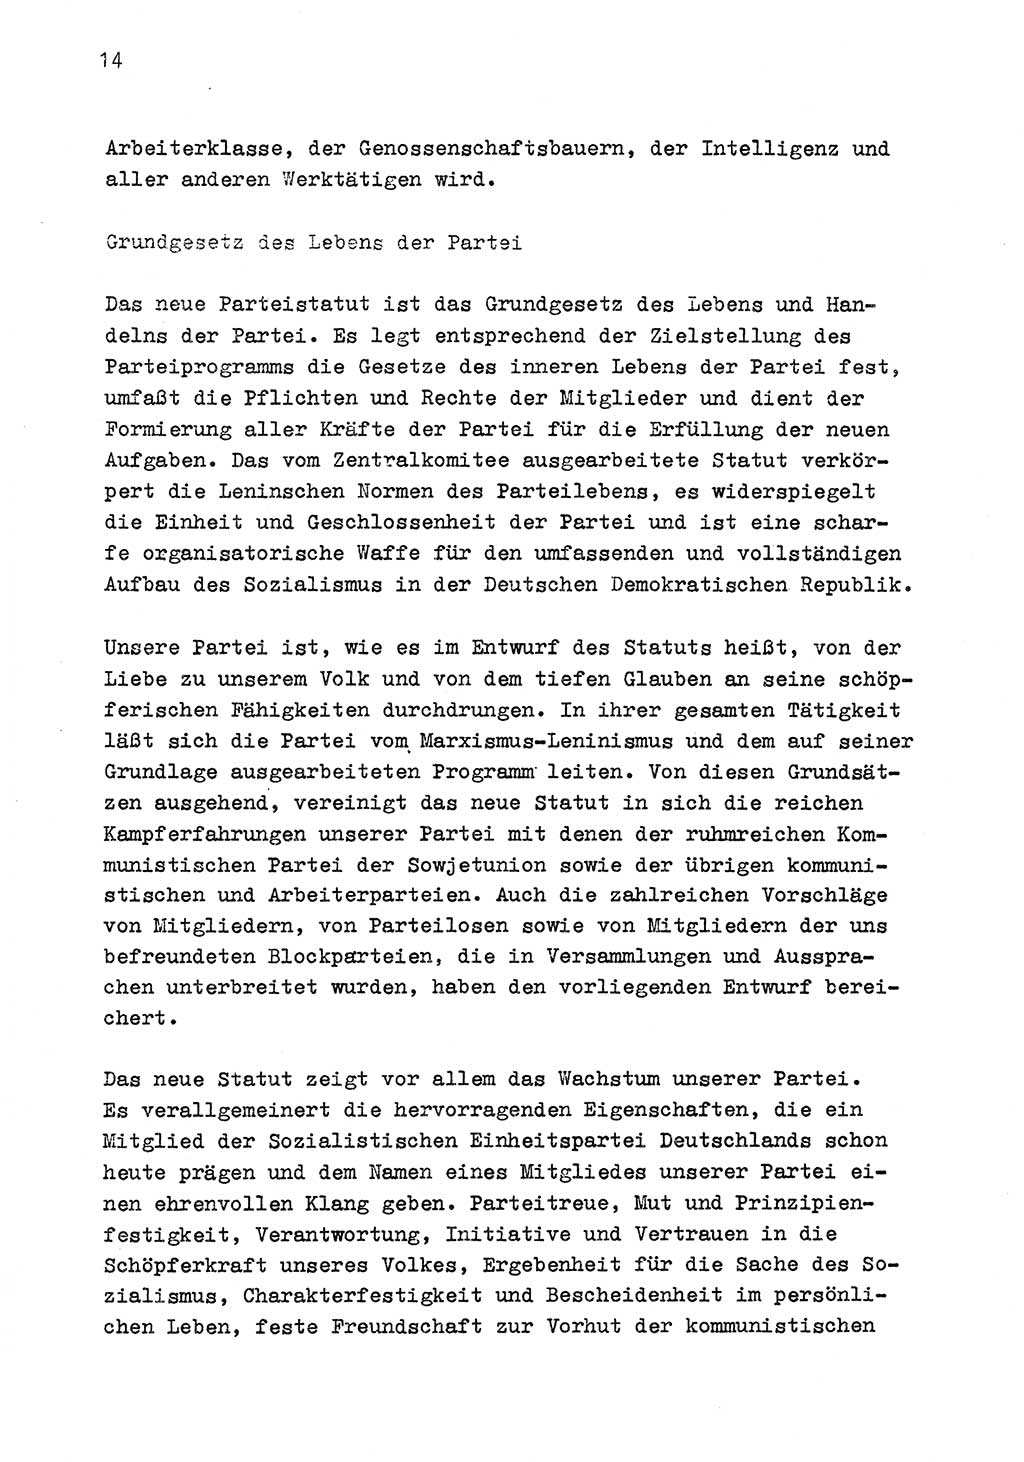 Zu Fragen der Parteiarbeit [Sozialistische Einheitspartei Deutschlands (SED) Deutsche Demokratische Republik (DDR)] 1979, Seite 14 (Fr. PA SED DDR 1979, S. 14)